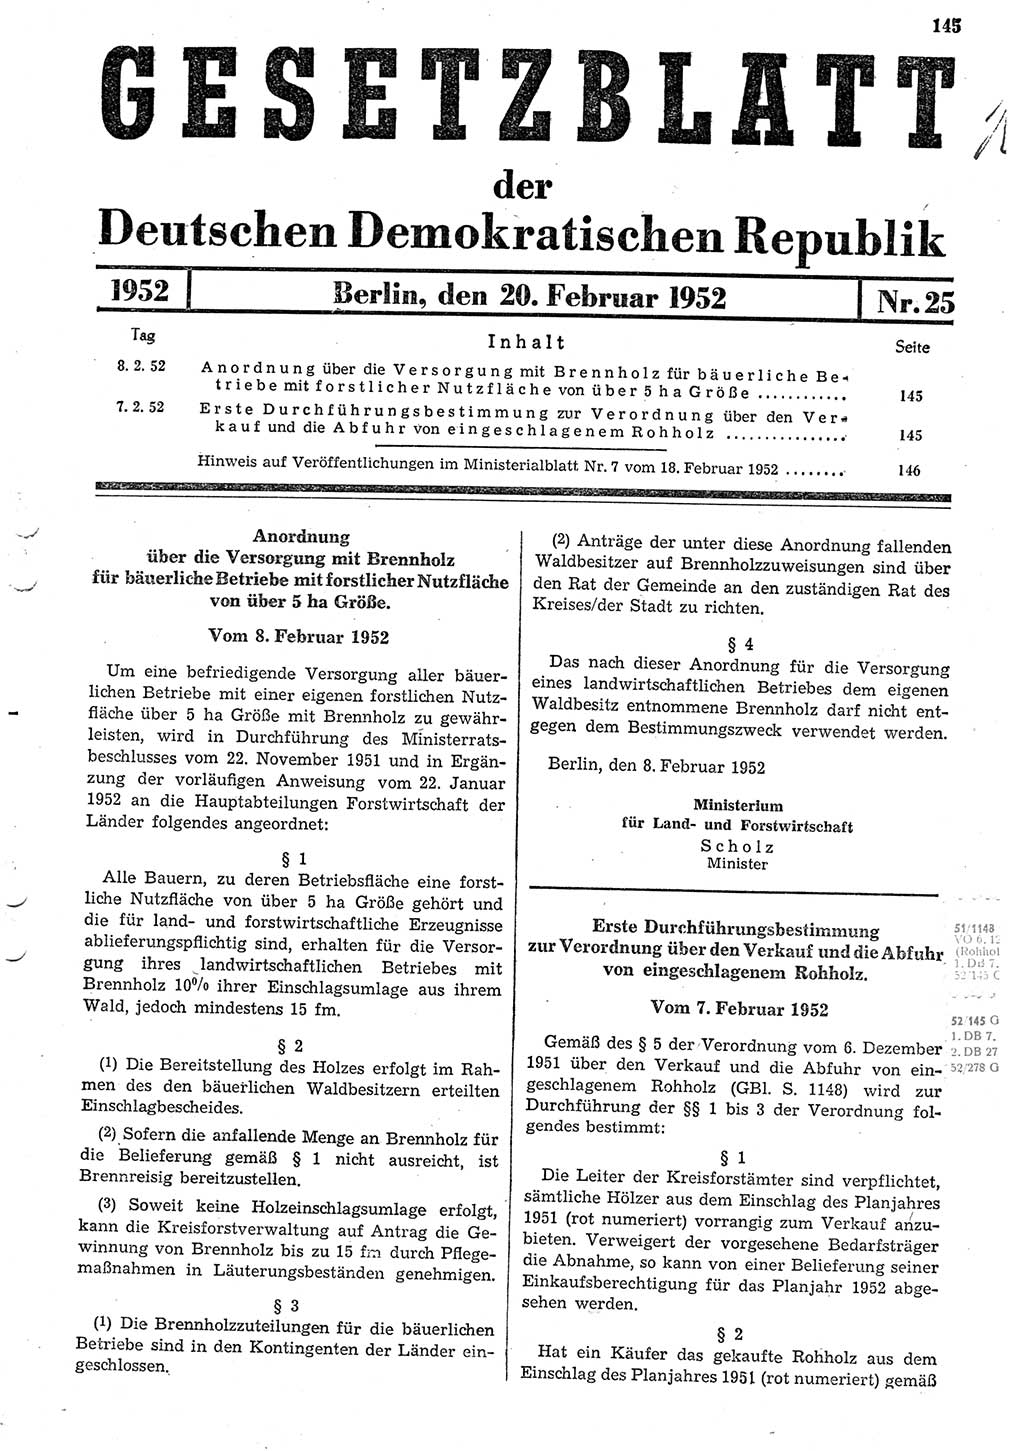 Gesetzblatt (GBl.) der Deutschen Demokratischen Republik (DDR) 1952, Seite 145 (GBl. DDR 1952, S. 145)